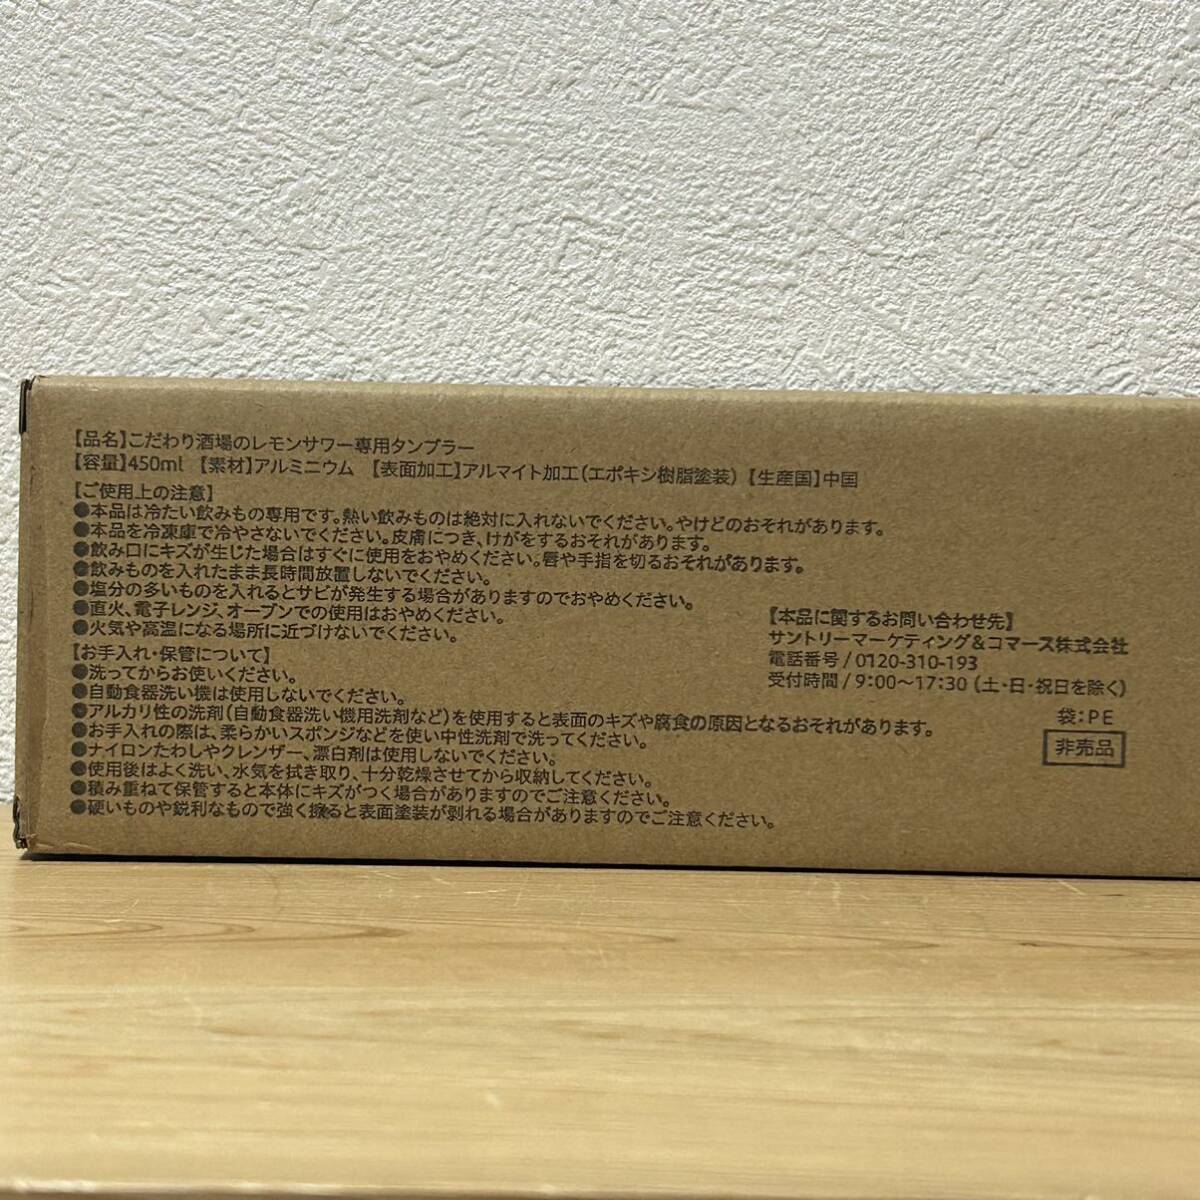 * предубеждение sake место. лимон сауэр специальный высокий стакан 6 штук 450ml aluminium не использовался не продается Suntory 6 шт. комплект идзакая бар . для бытового использования дом .. и т.д. 